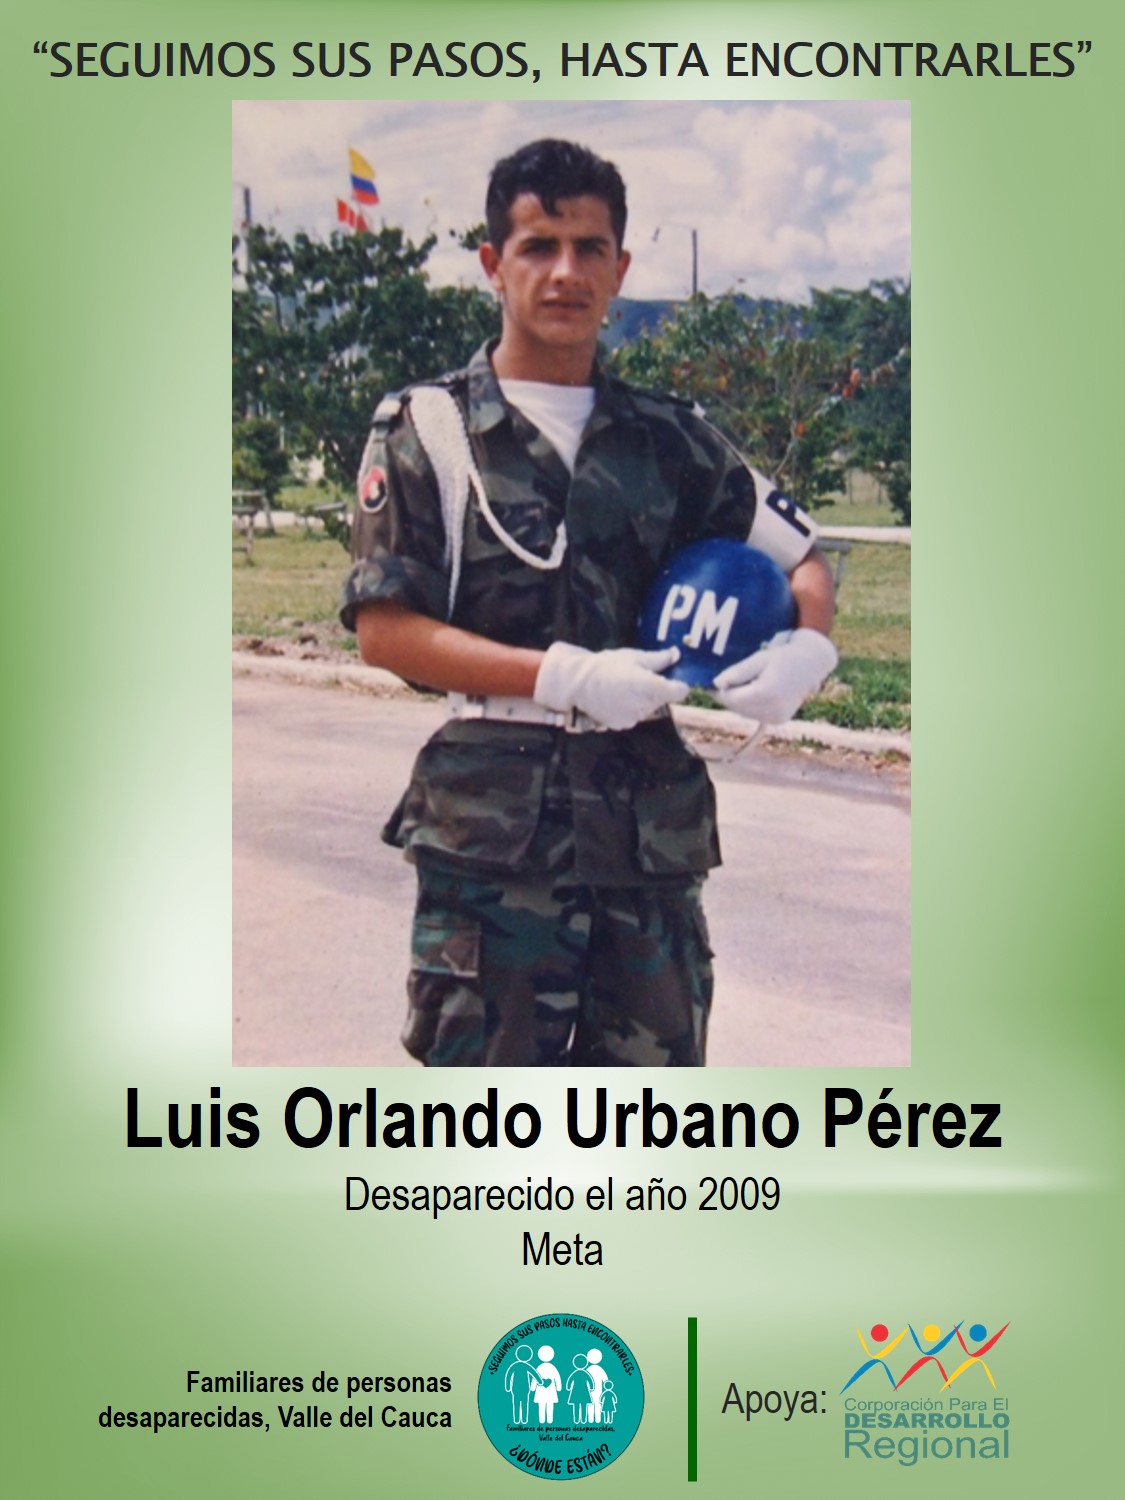 Luis Orlando Urbano Pérez